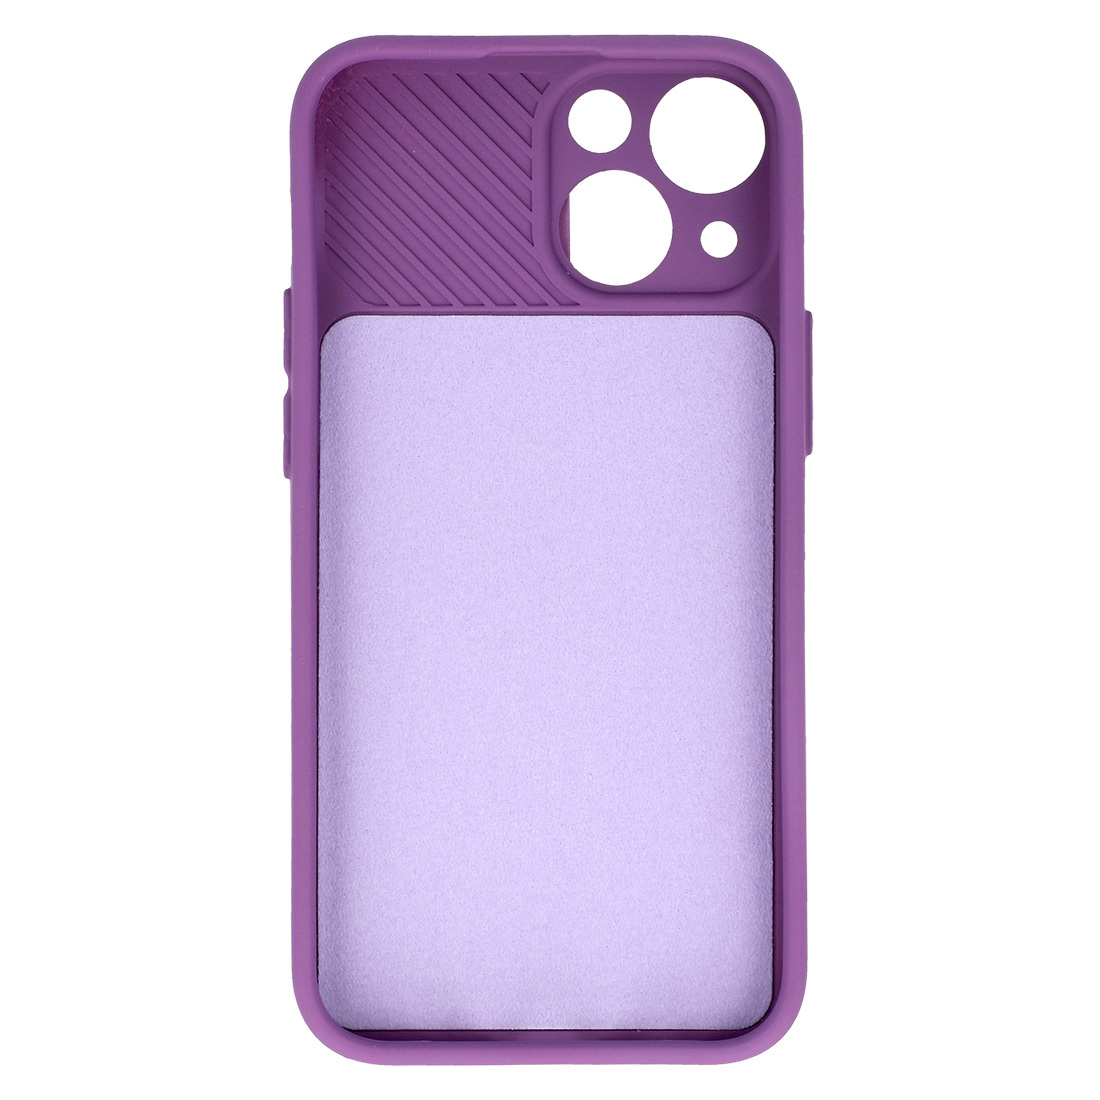 Pokrowiec etui z elastycznego TPU Camshield Soft Case fioletowe APPLE iPhone 11 Pro Max / 5